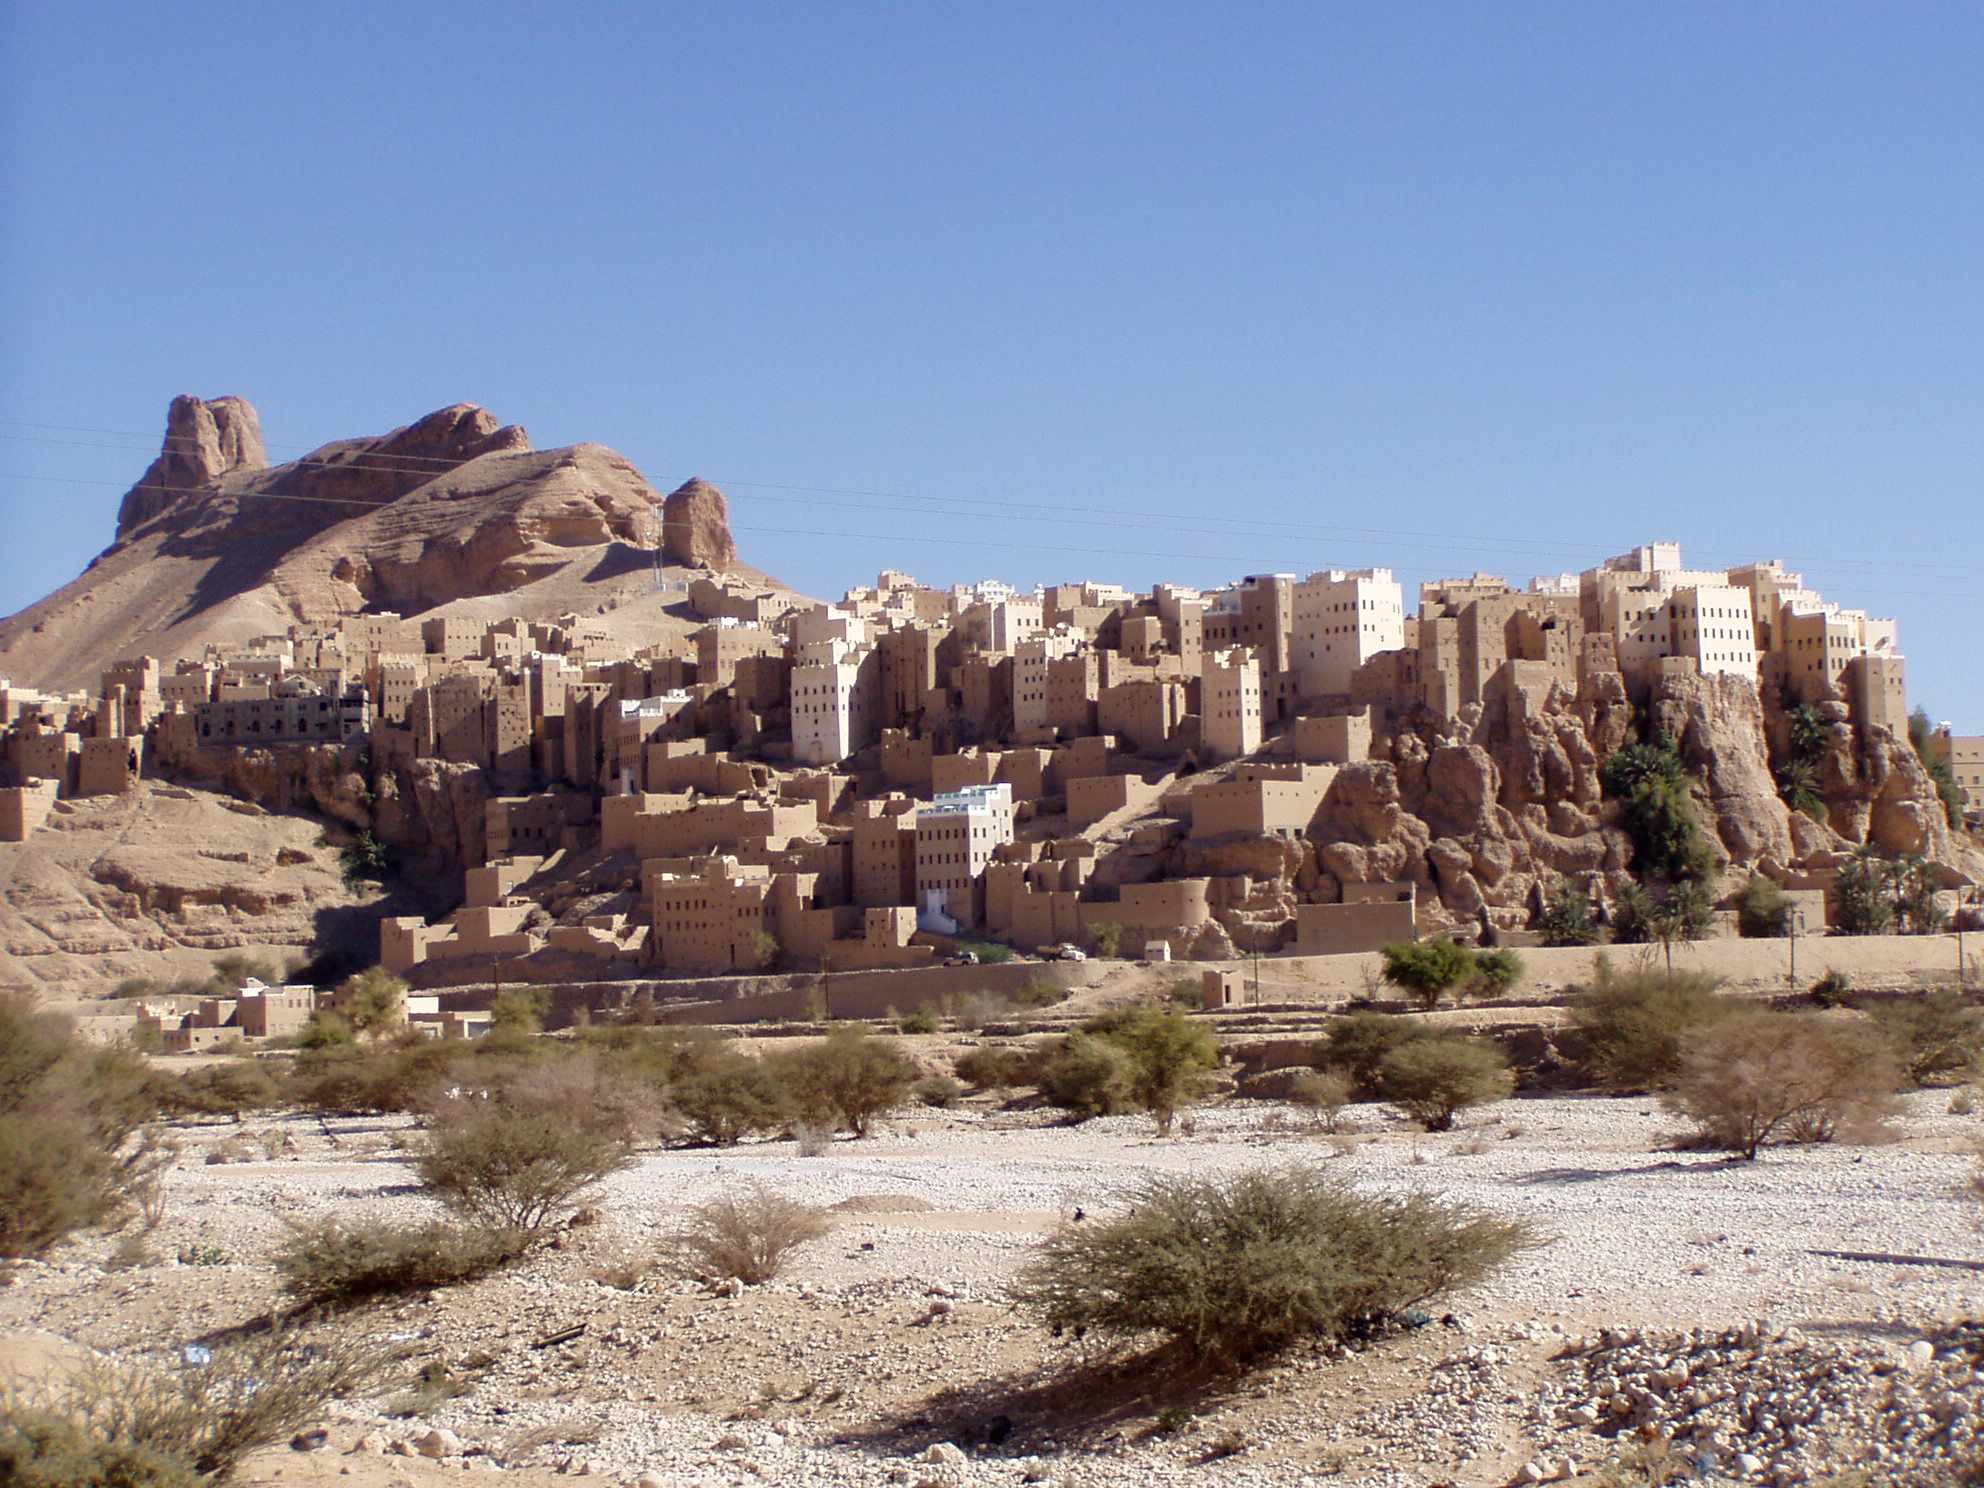 Uskumatu küla Jeemenis, mis on ehitatud 150 meetri kõrgusele hiiglaslikule kiviplokile 2